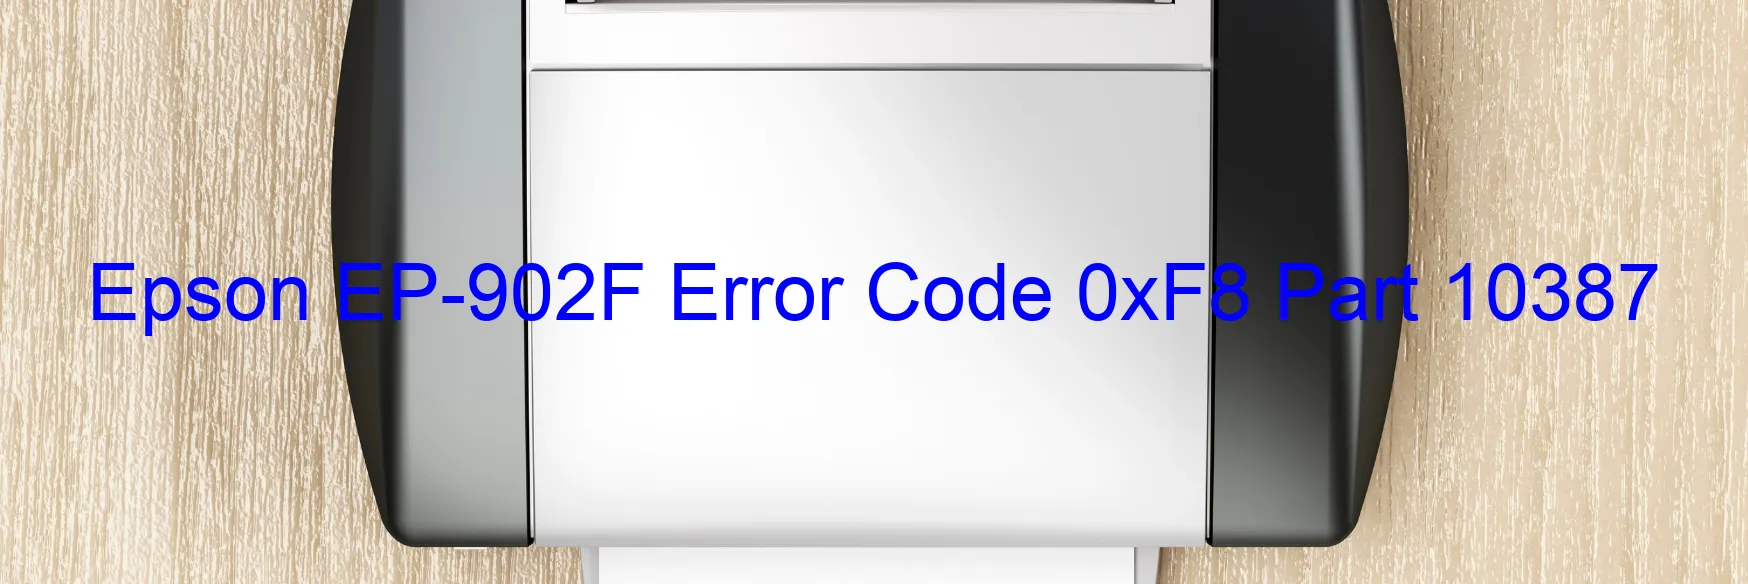 Epson EP-902F Error Code 0xF8 Part 10387